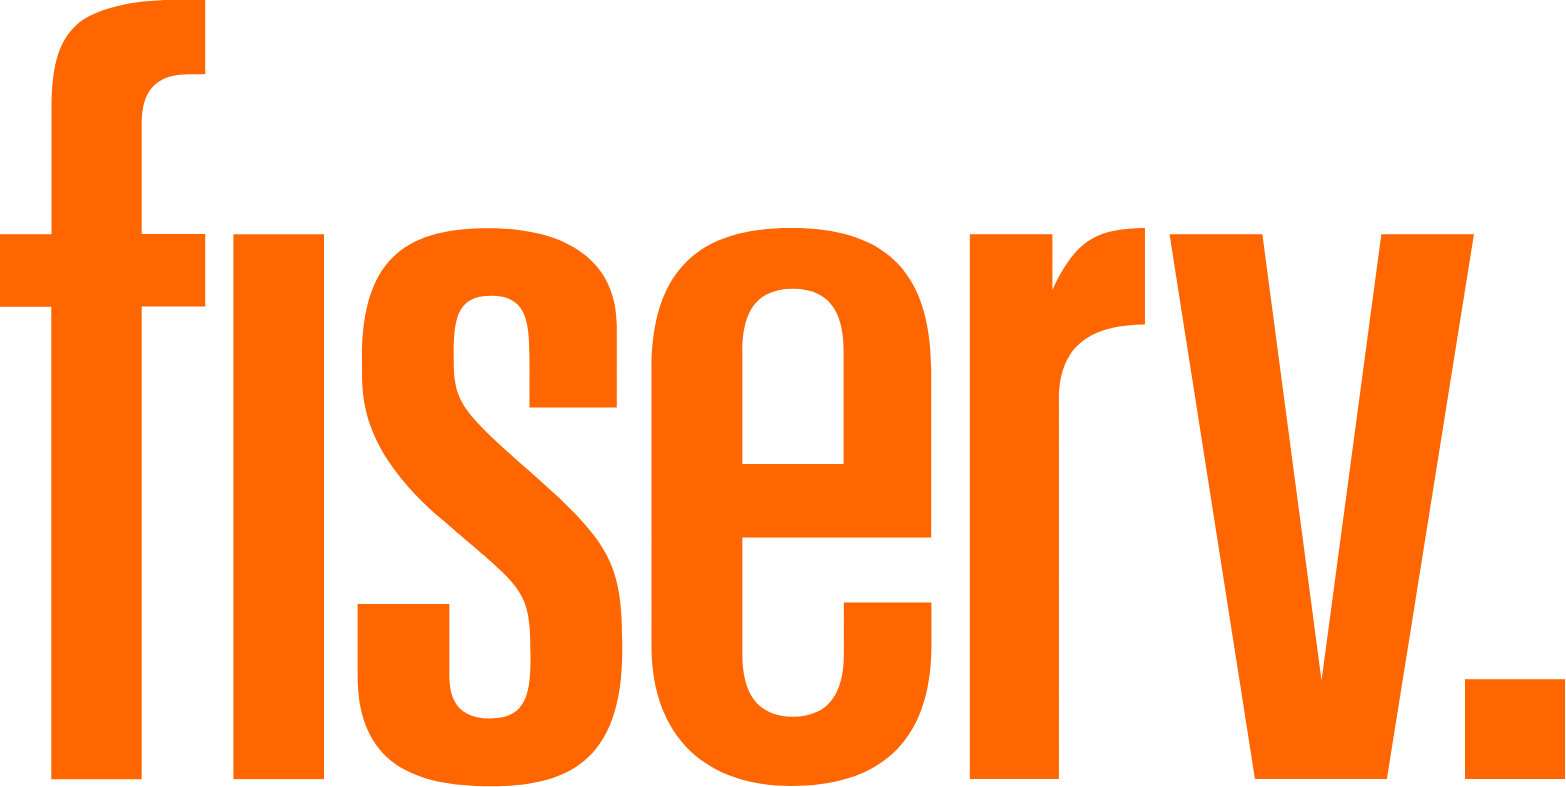 Fiserv logo large (transparent PNG)